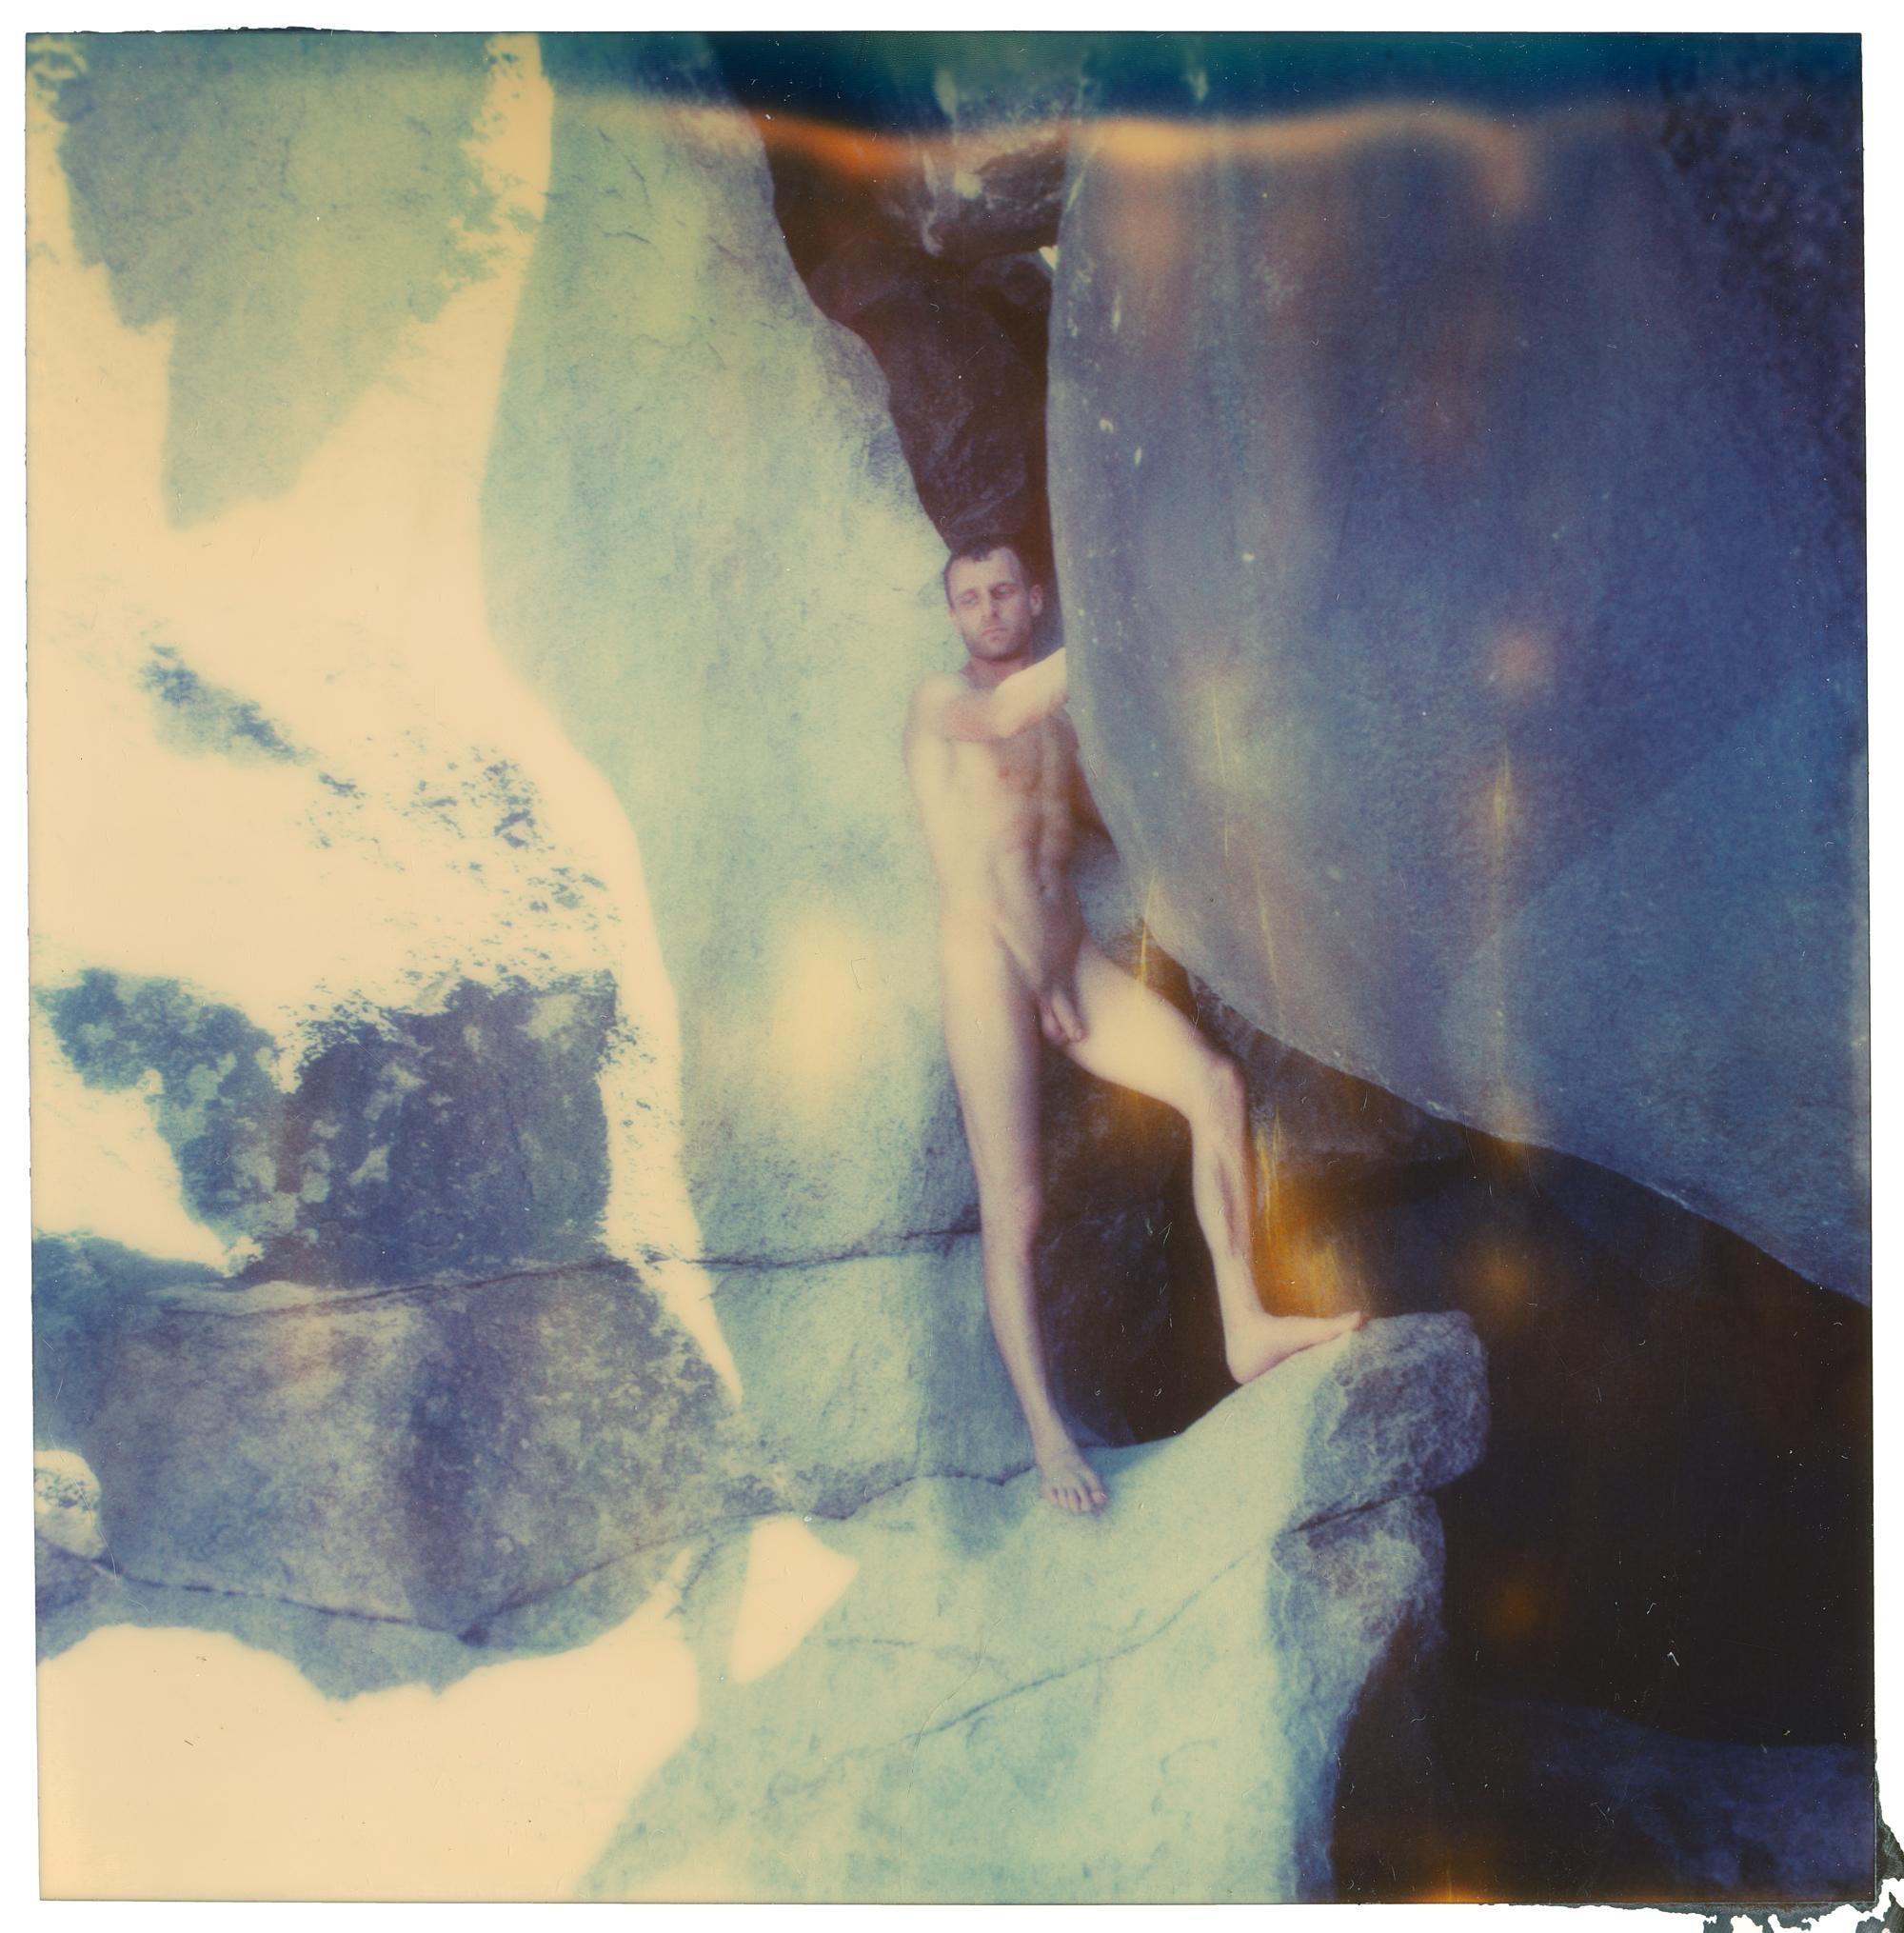 Stefanie Schneider Color Photograph – The Cave 02 – Planet der Affen 11 – 21. Jahrhundert, Polaroid, Abstrakt